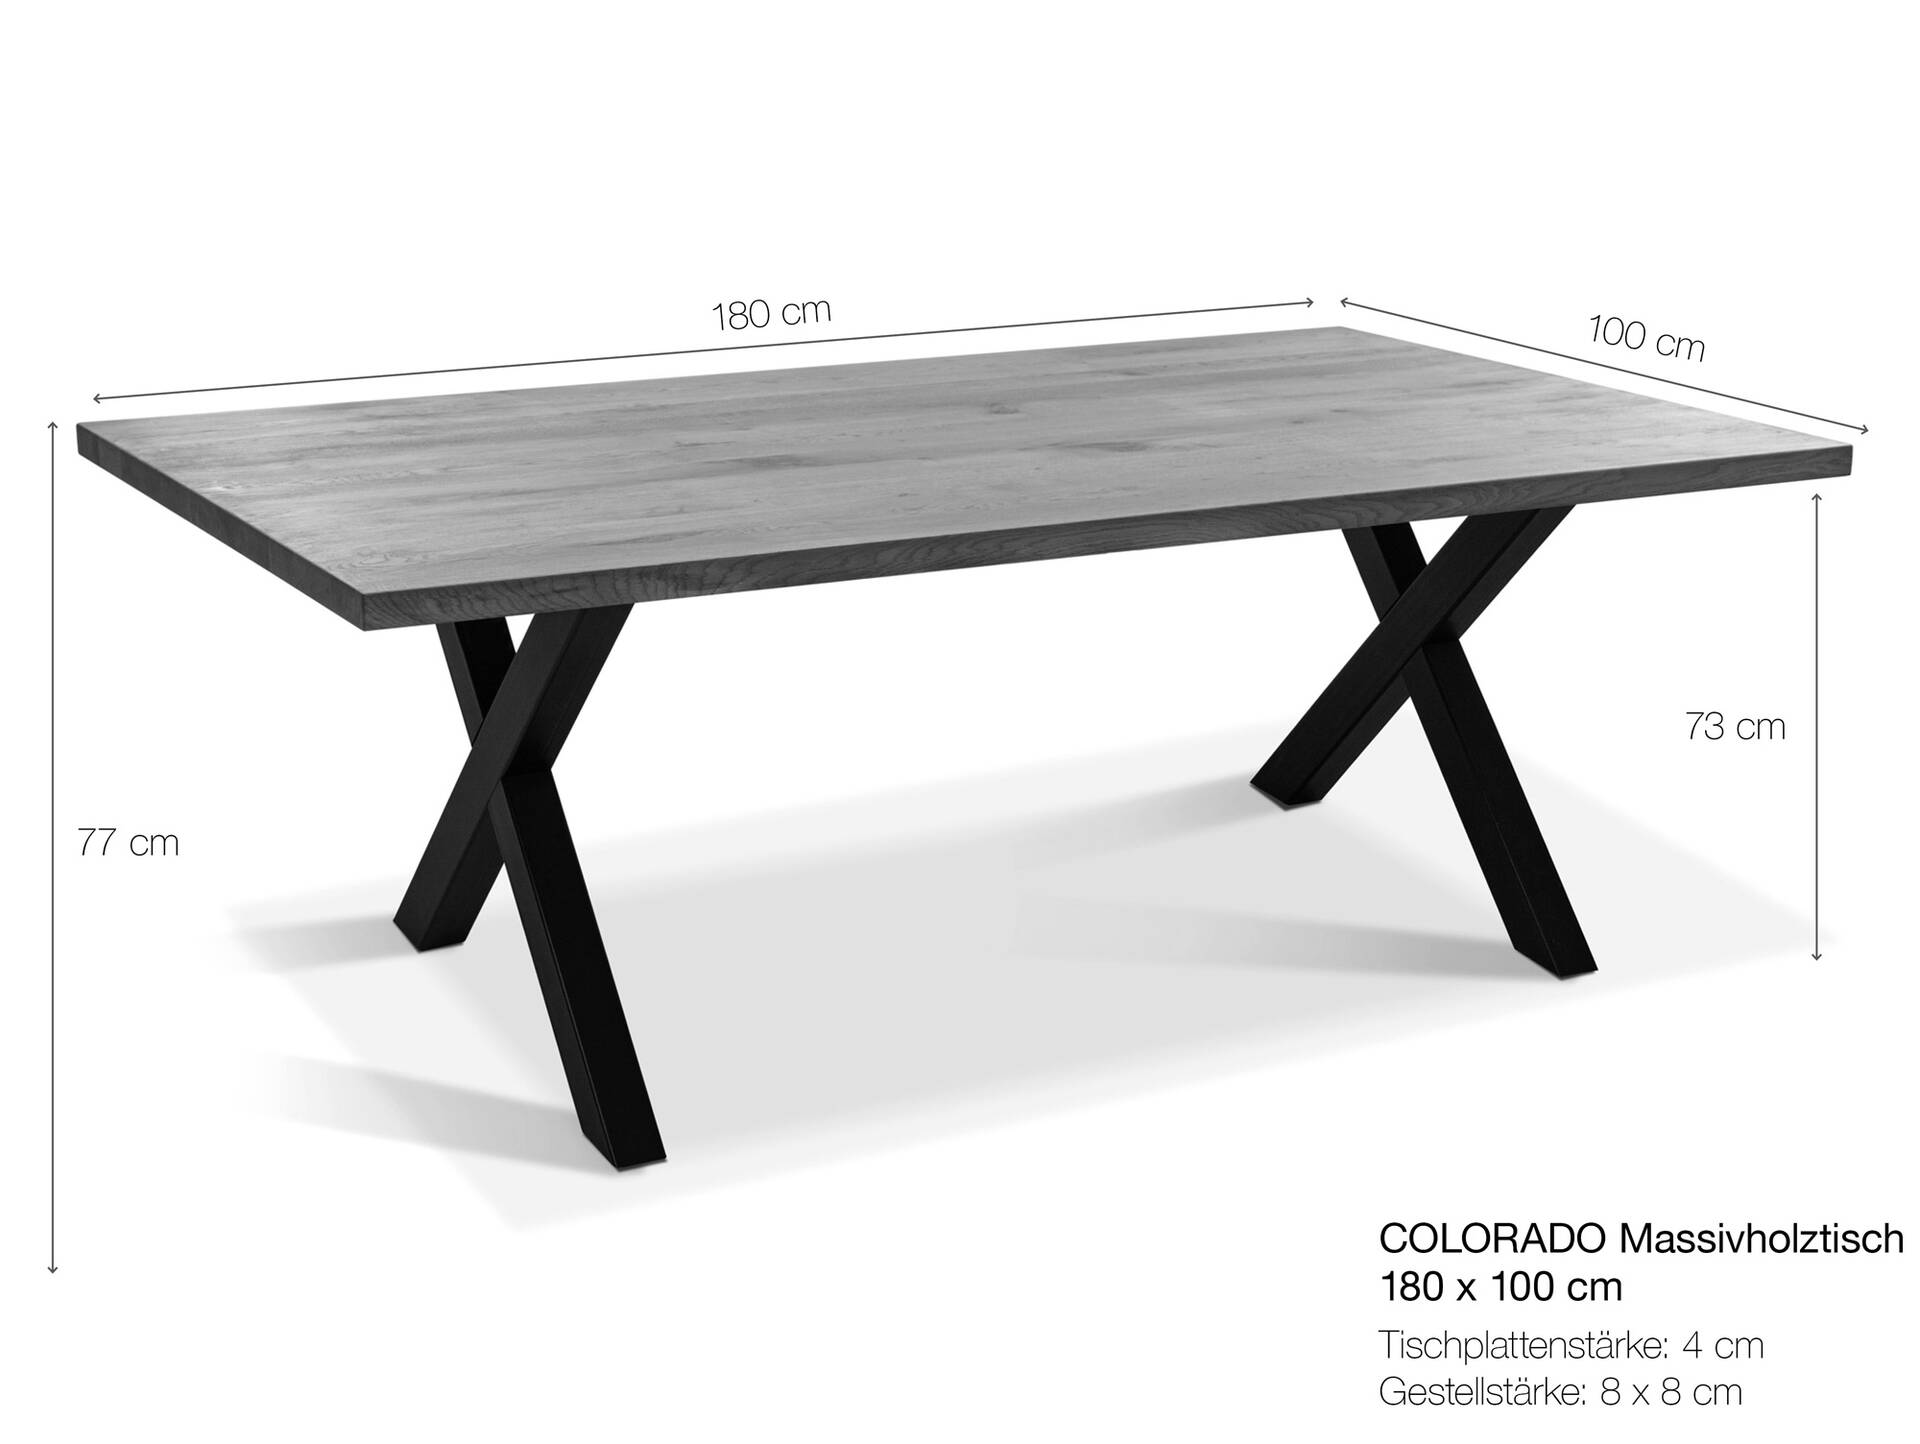 COLORADO Massivholztisch mit X-Beinen, Material Massivholz, Eiche 180 x 100 cm